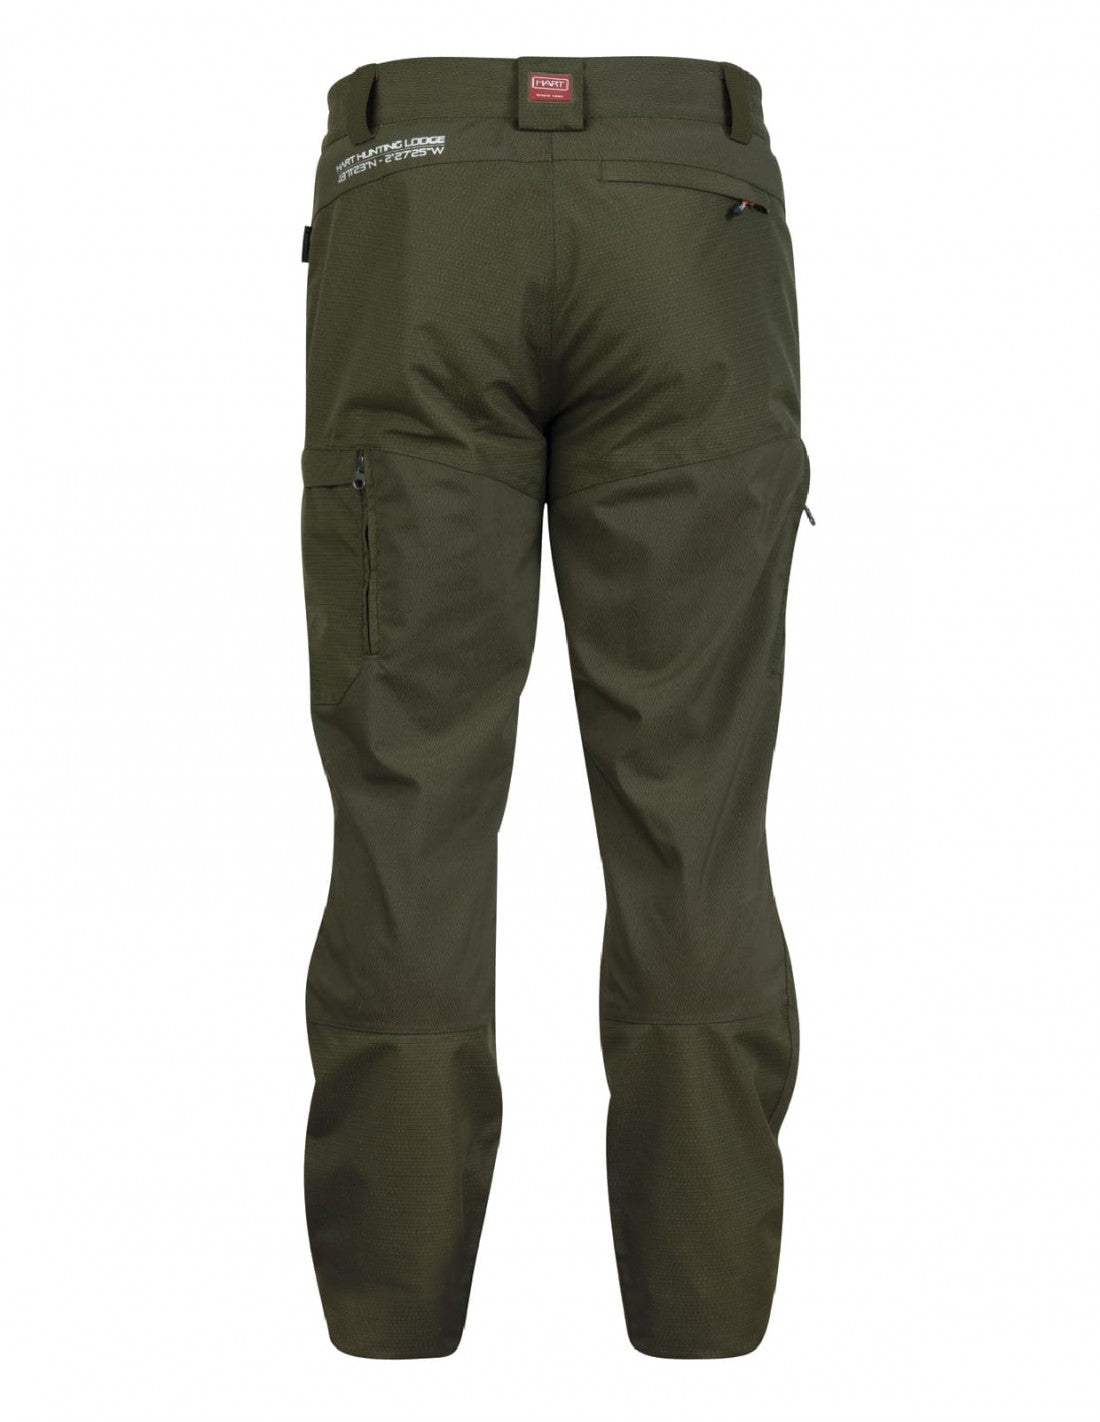 Pantaloni rezistenti la spini si impermeabili HART Armotion XHP (50/52/54)